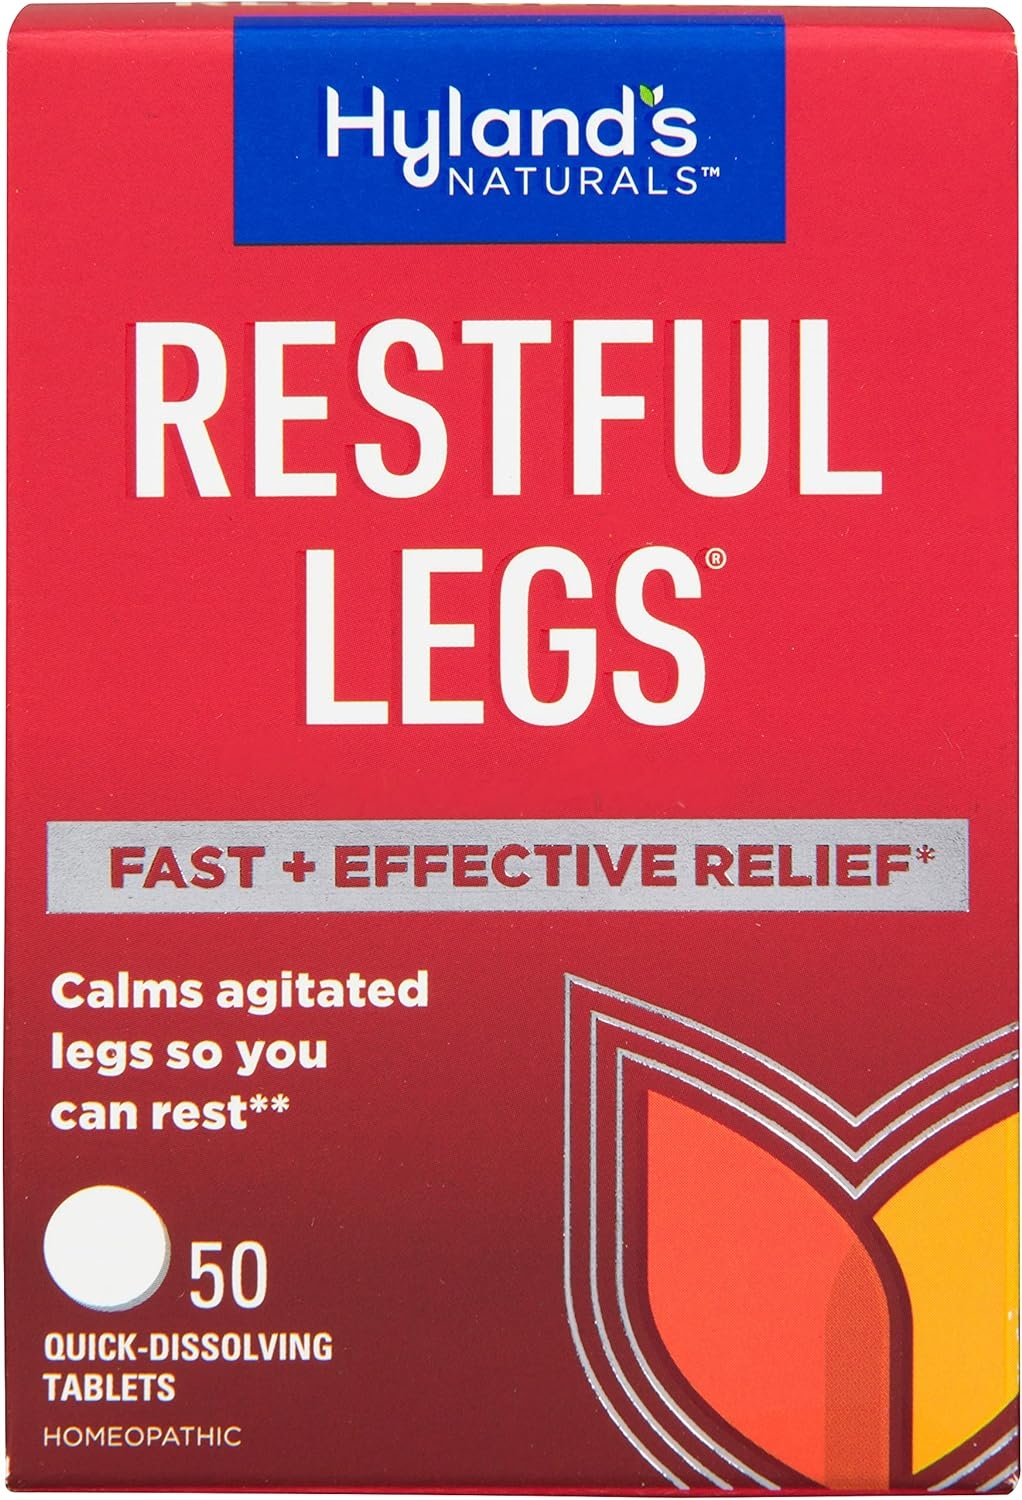 Restful Legs